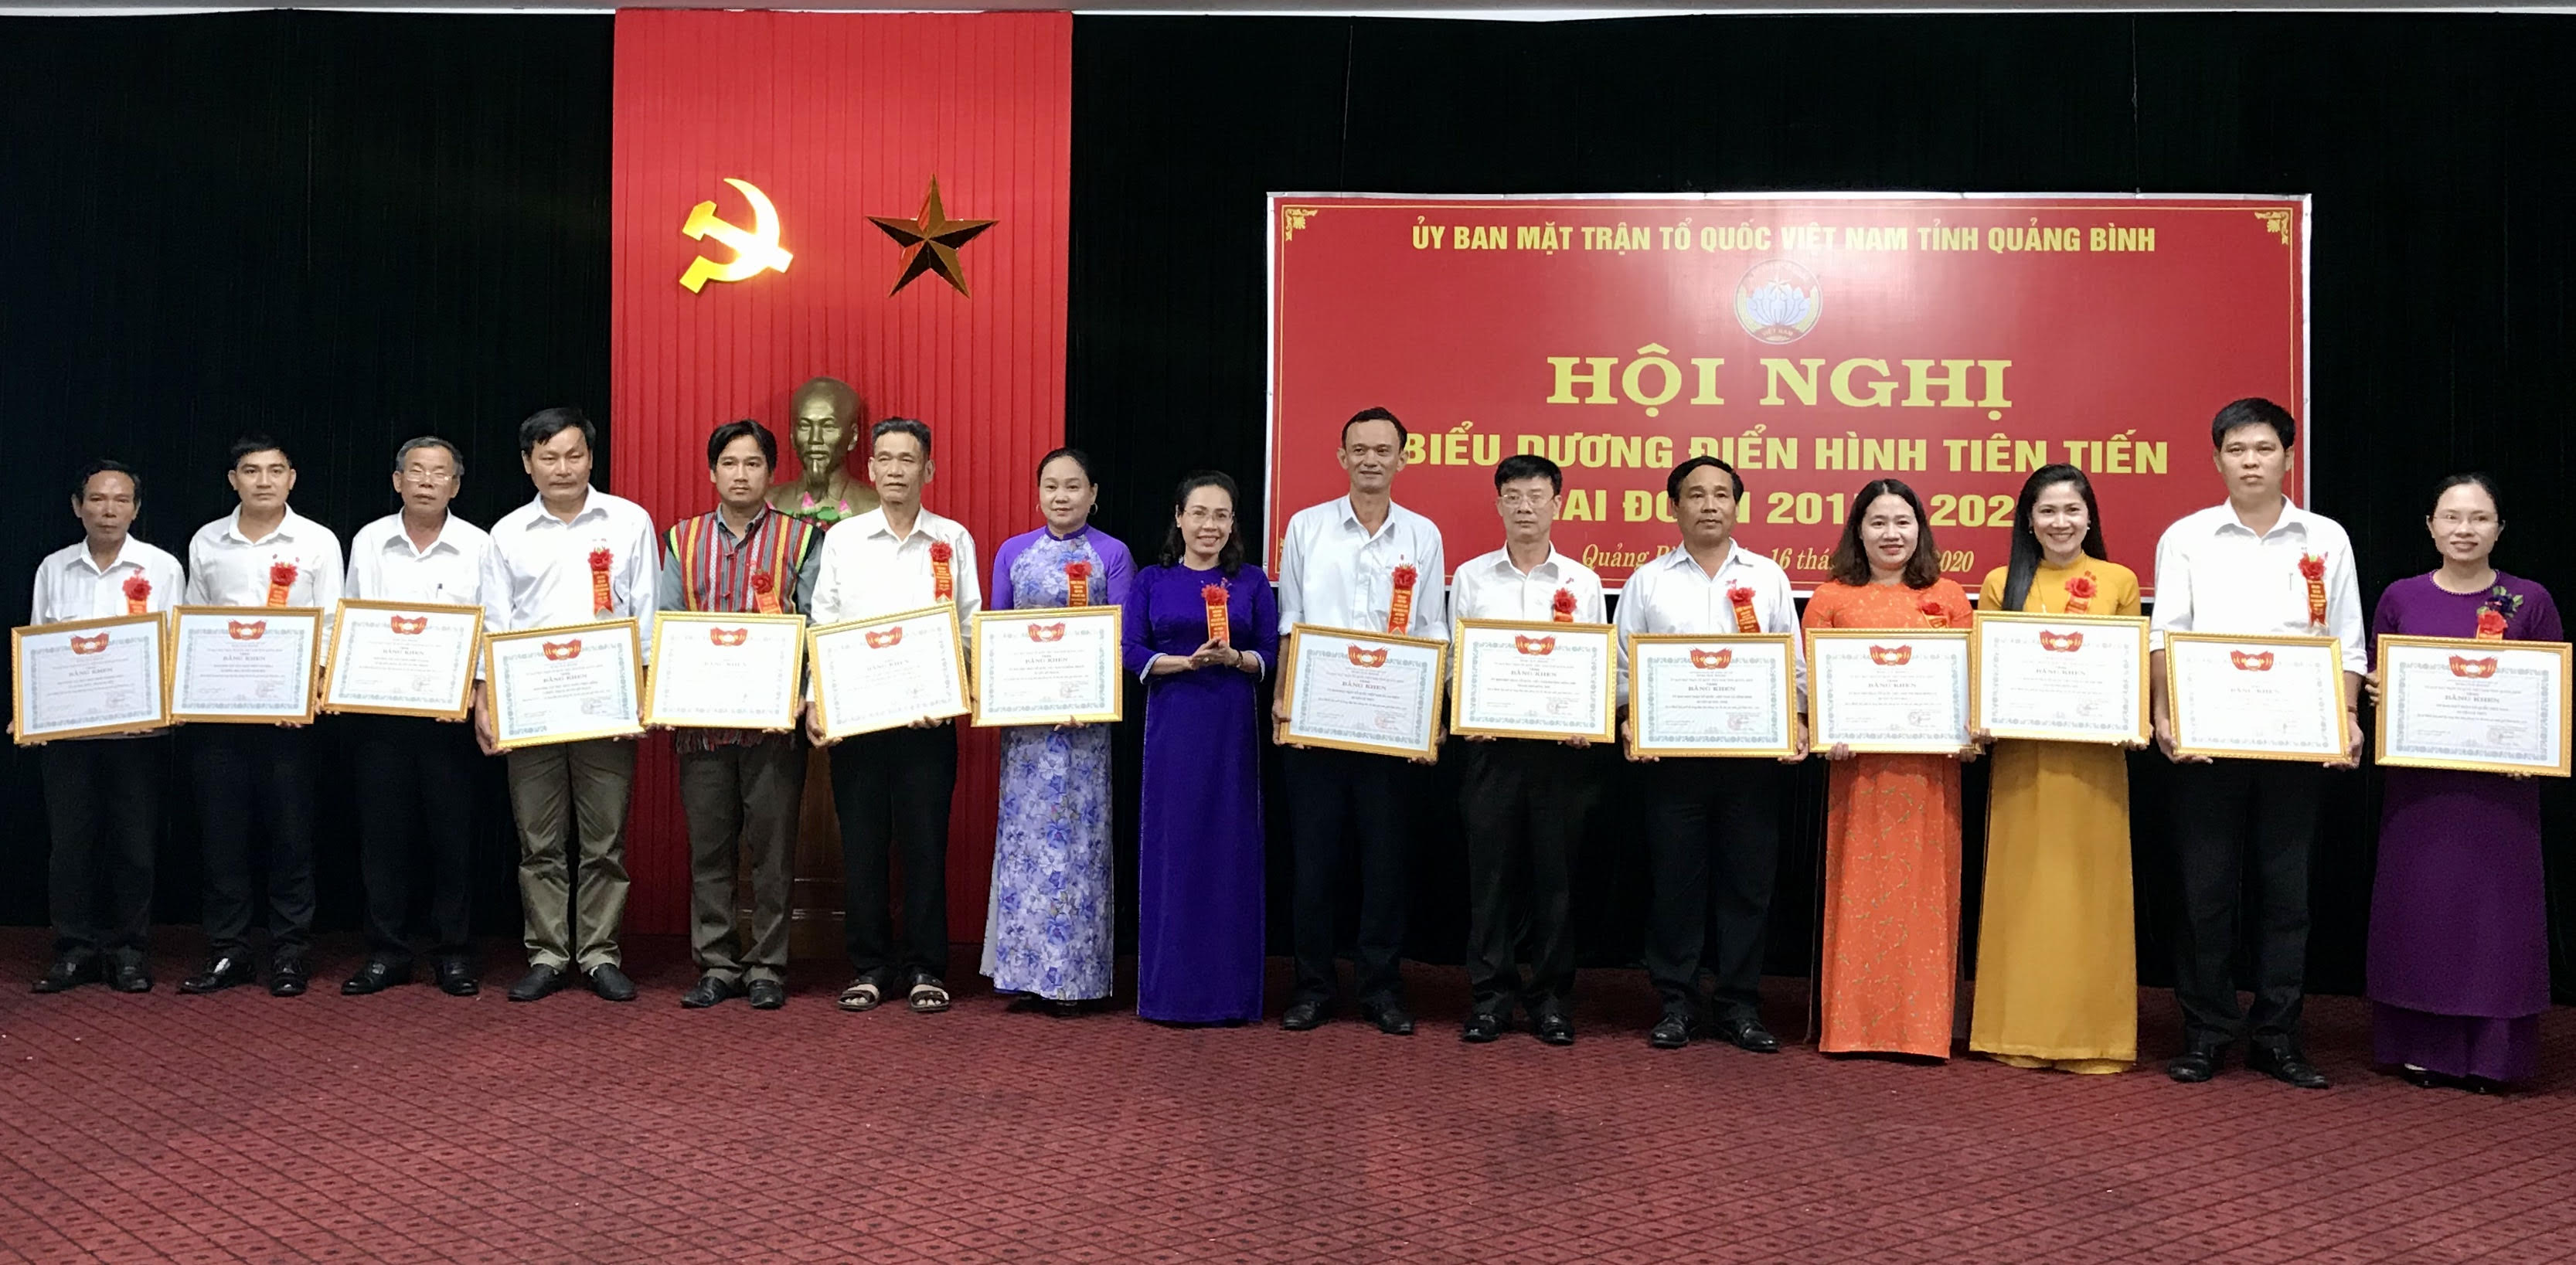   Ông Bùi Xuân Thông (thứ 3 từ trái sang) đại diện cho thôn Tú Loan 3 nhận bằng khen của Ủy ban MTTQVN tỉnh tại hội nghị biểu dương điển hình tiên tiến giai đoạn 2015-2020.